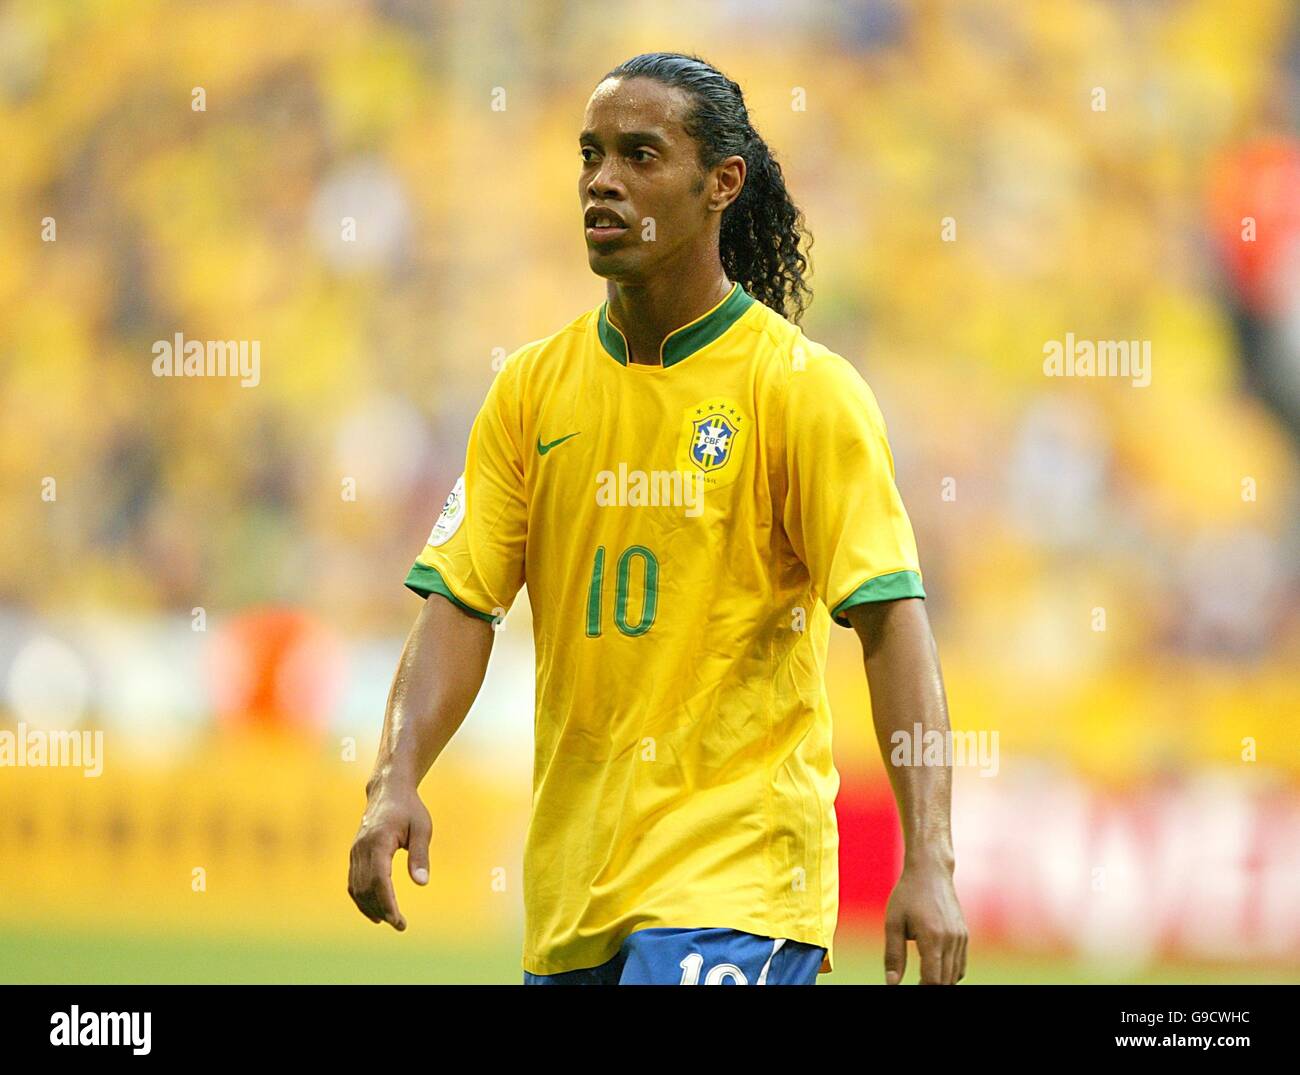 Fußball - FIFA Fußball-Weltmeisterschaft 2006 Deutschland - Gruppe F - Brasilien - Australien - Allianz Arena. Ronaldinho, Brasilien Stockfoto